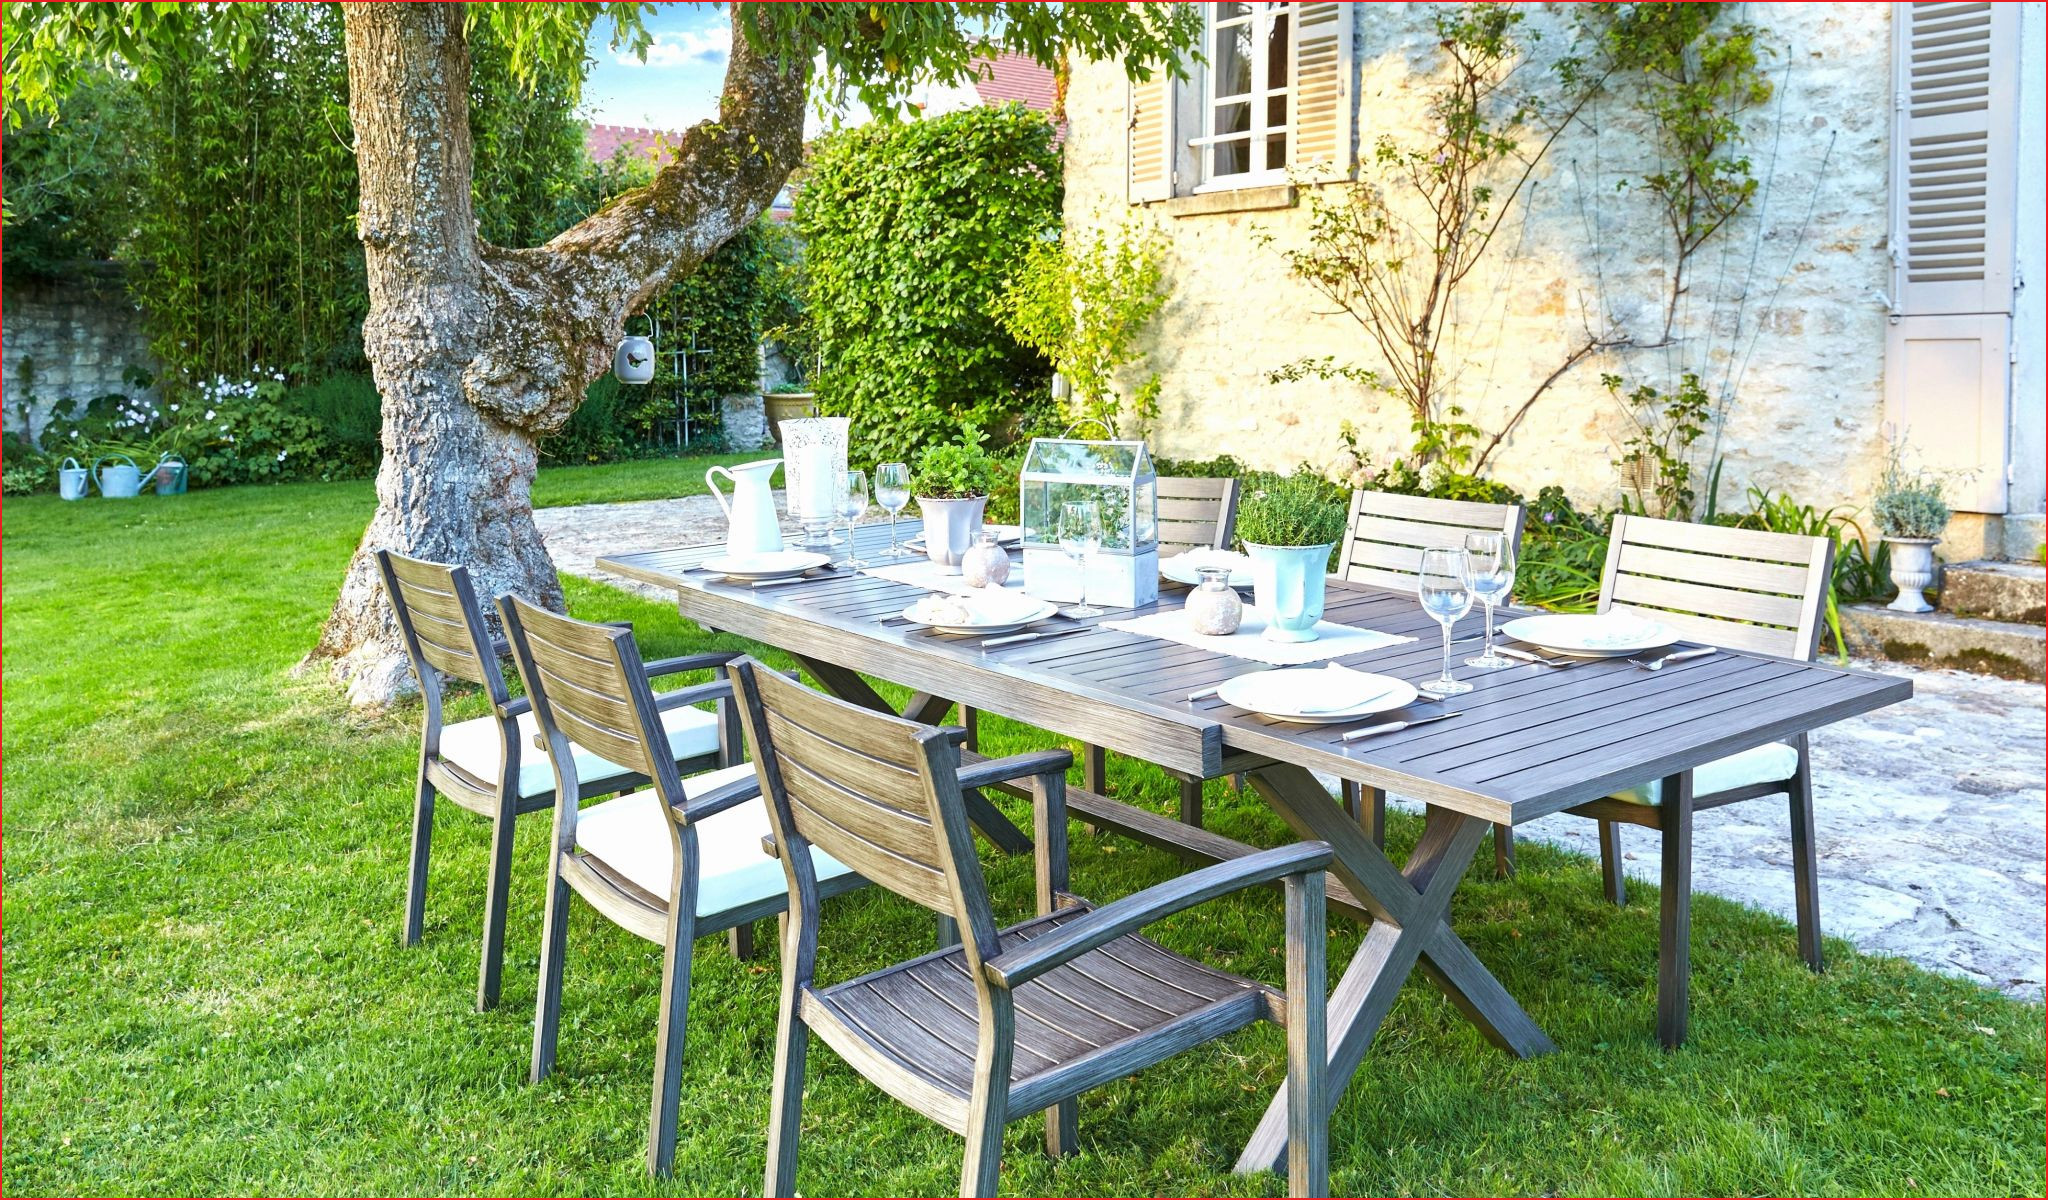 Table Pour Terrasse Best Of Innovante Banc Pour Jardin Image De Jardin Décoratif